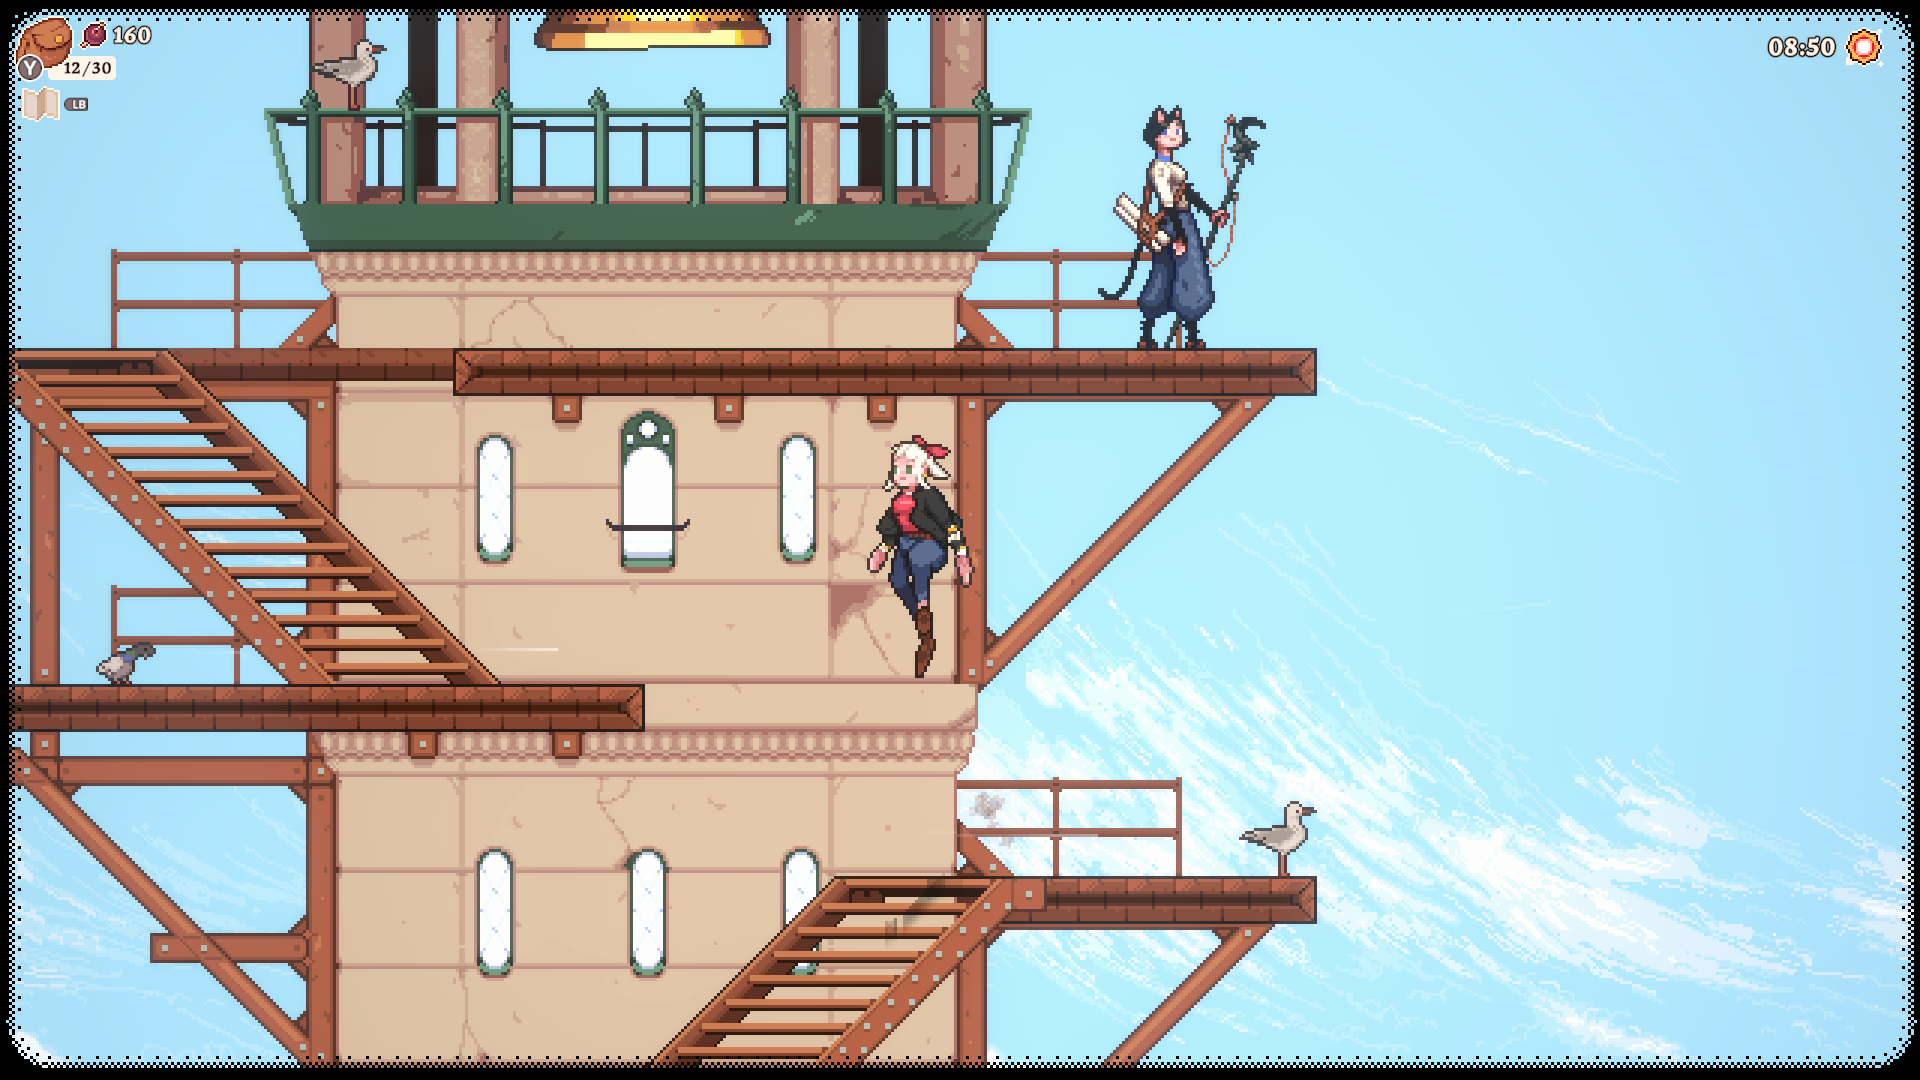 Gameplay Screenshot of Flora platforming and climbing a tower.